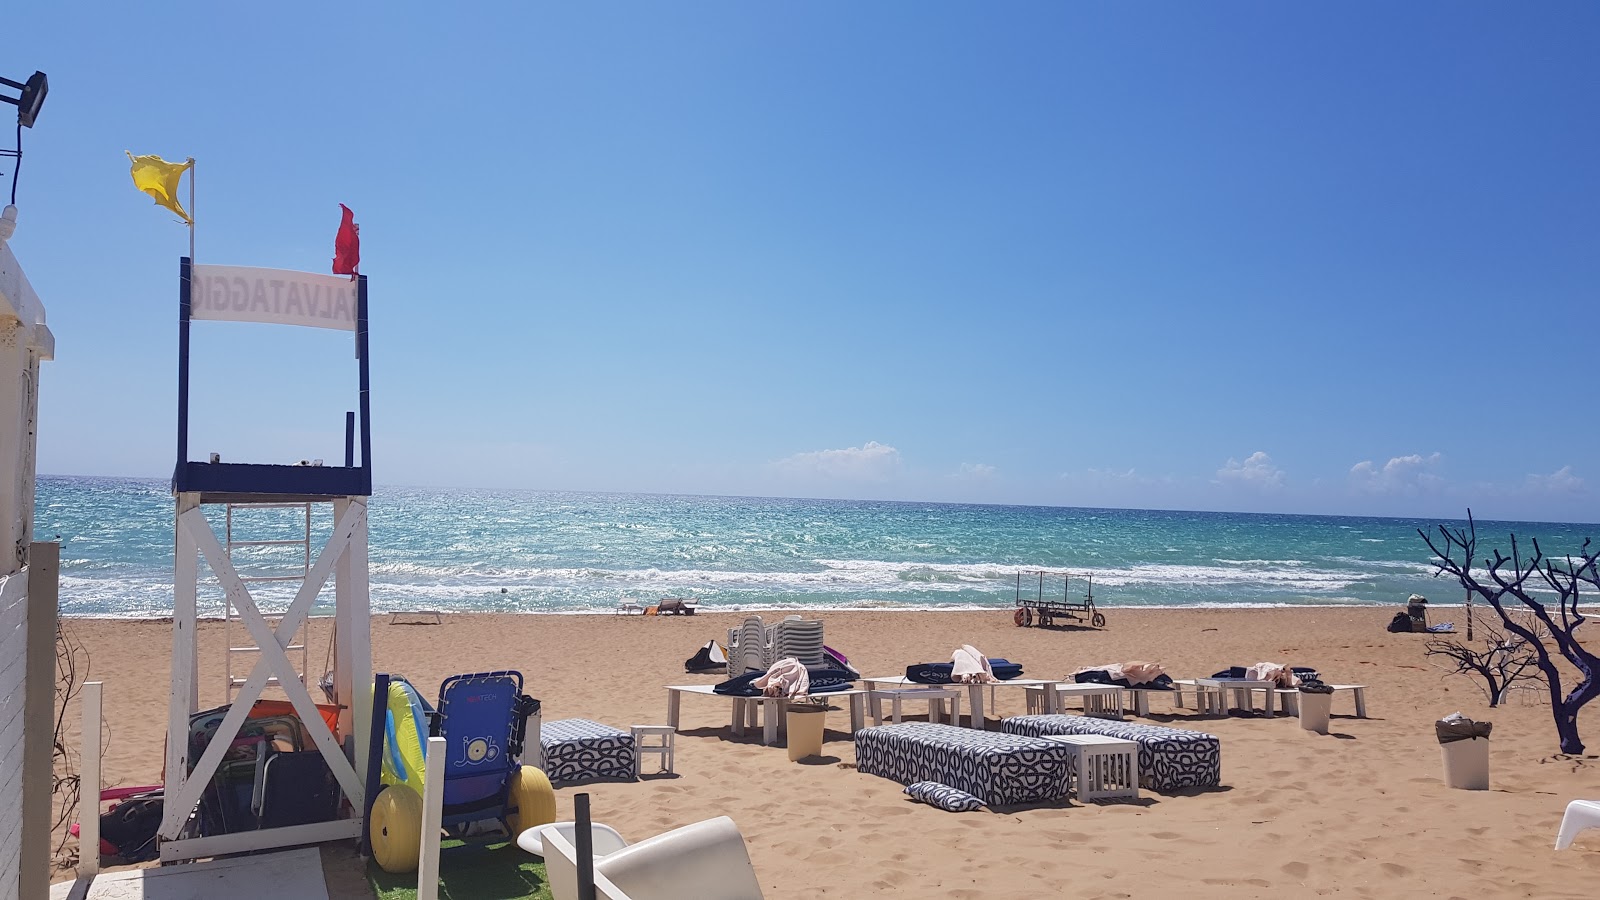 Cannatello beach'in fotoğrafı - rahatlamayı sevenler arasında popüler bir yer